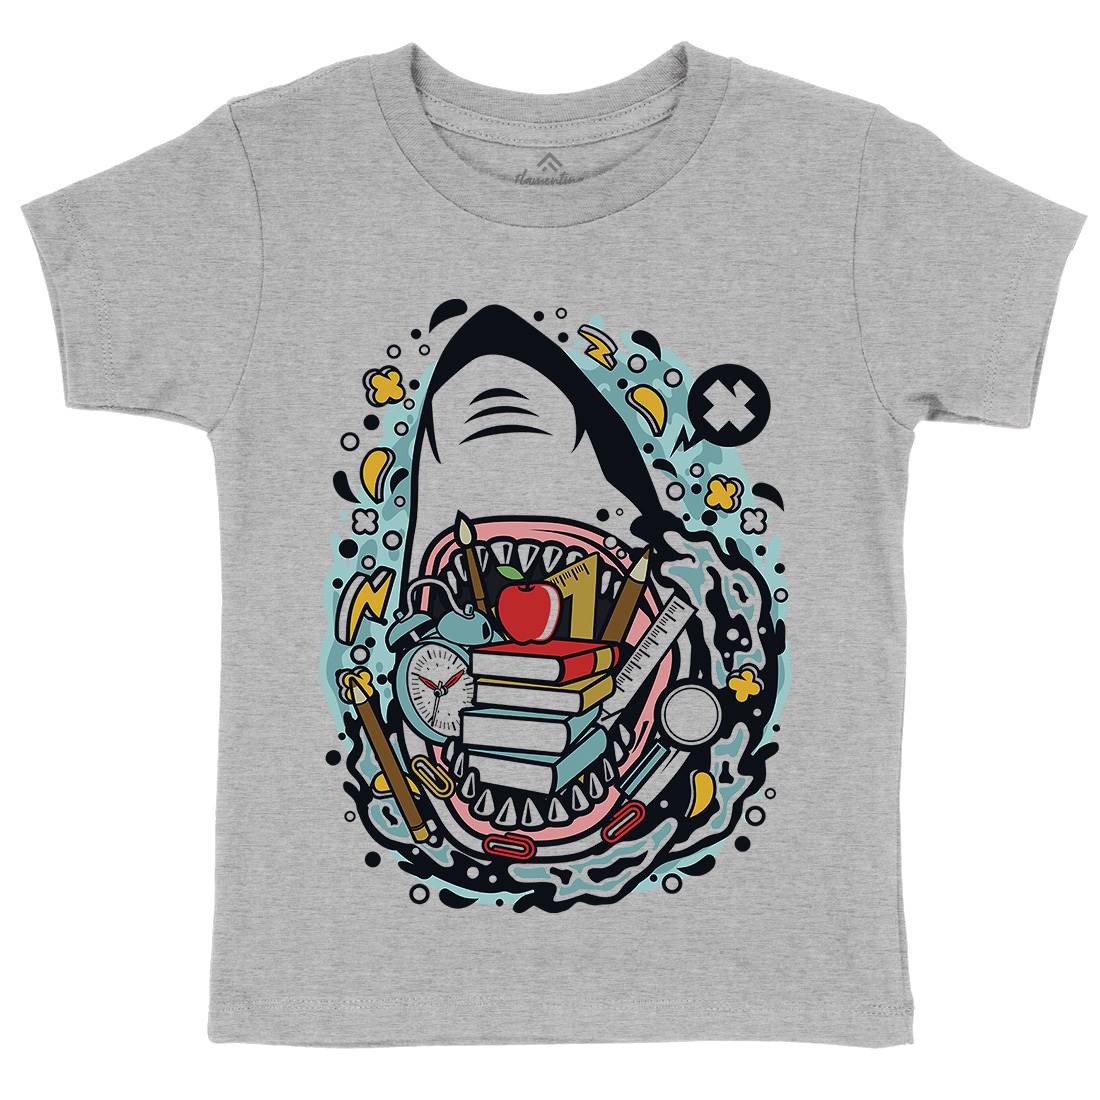 Shark School Kids Crew Neck T-Shirt Work C647